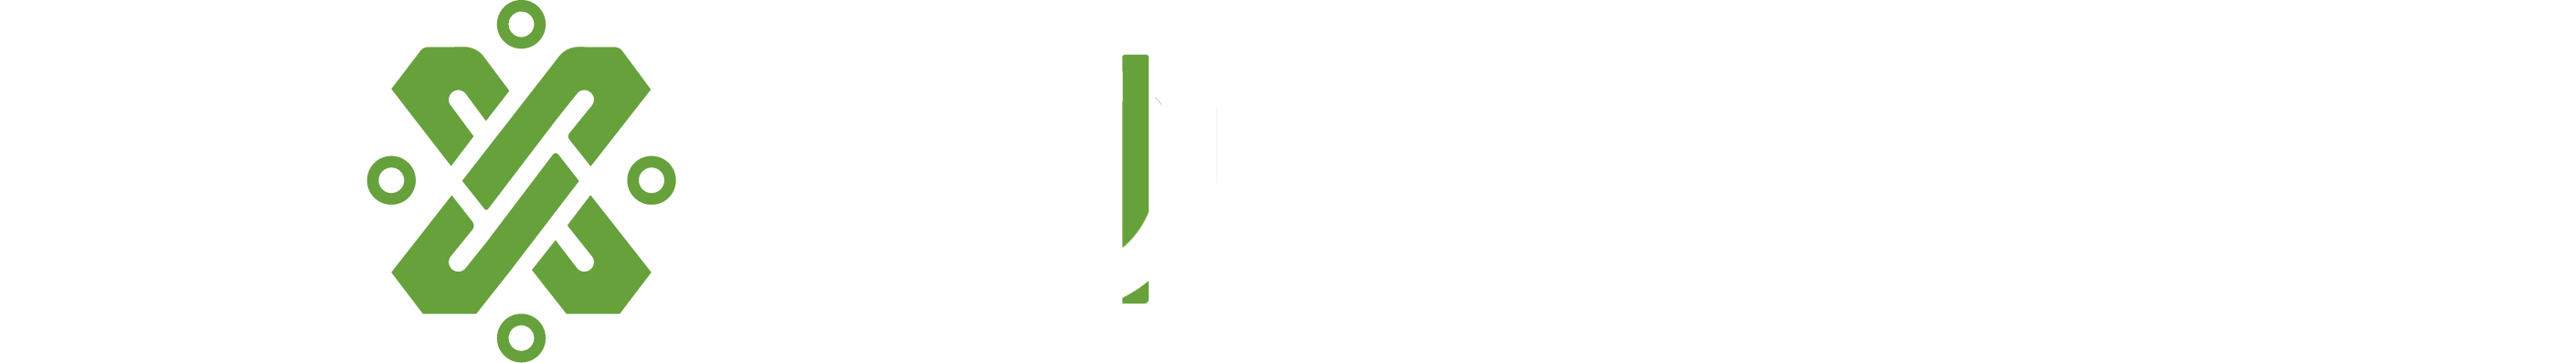 Agencia Digital de Innovación Publica